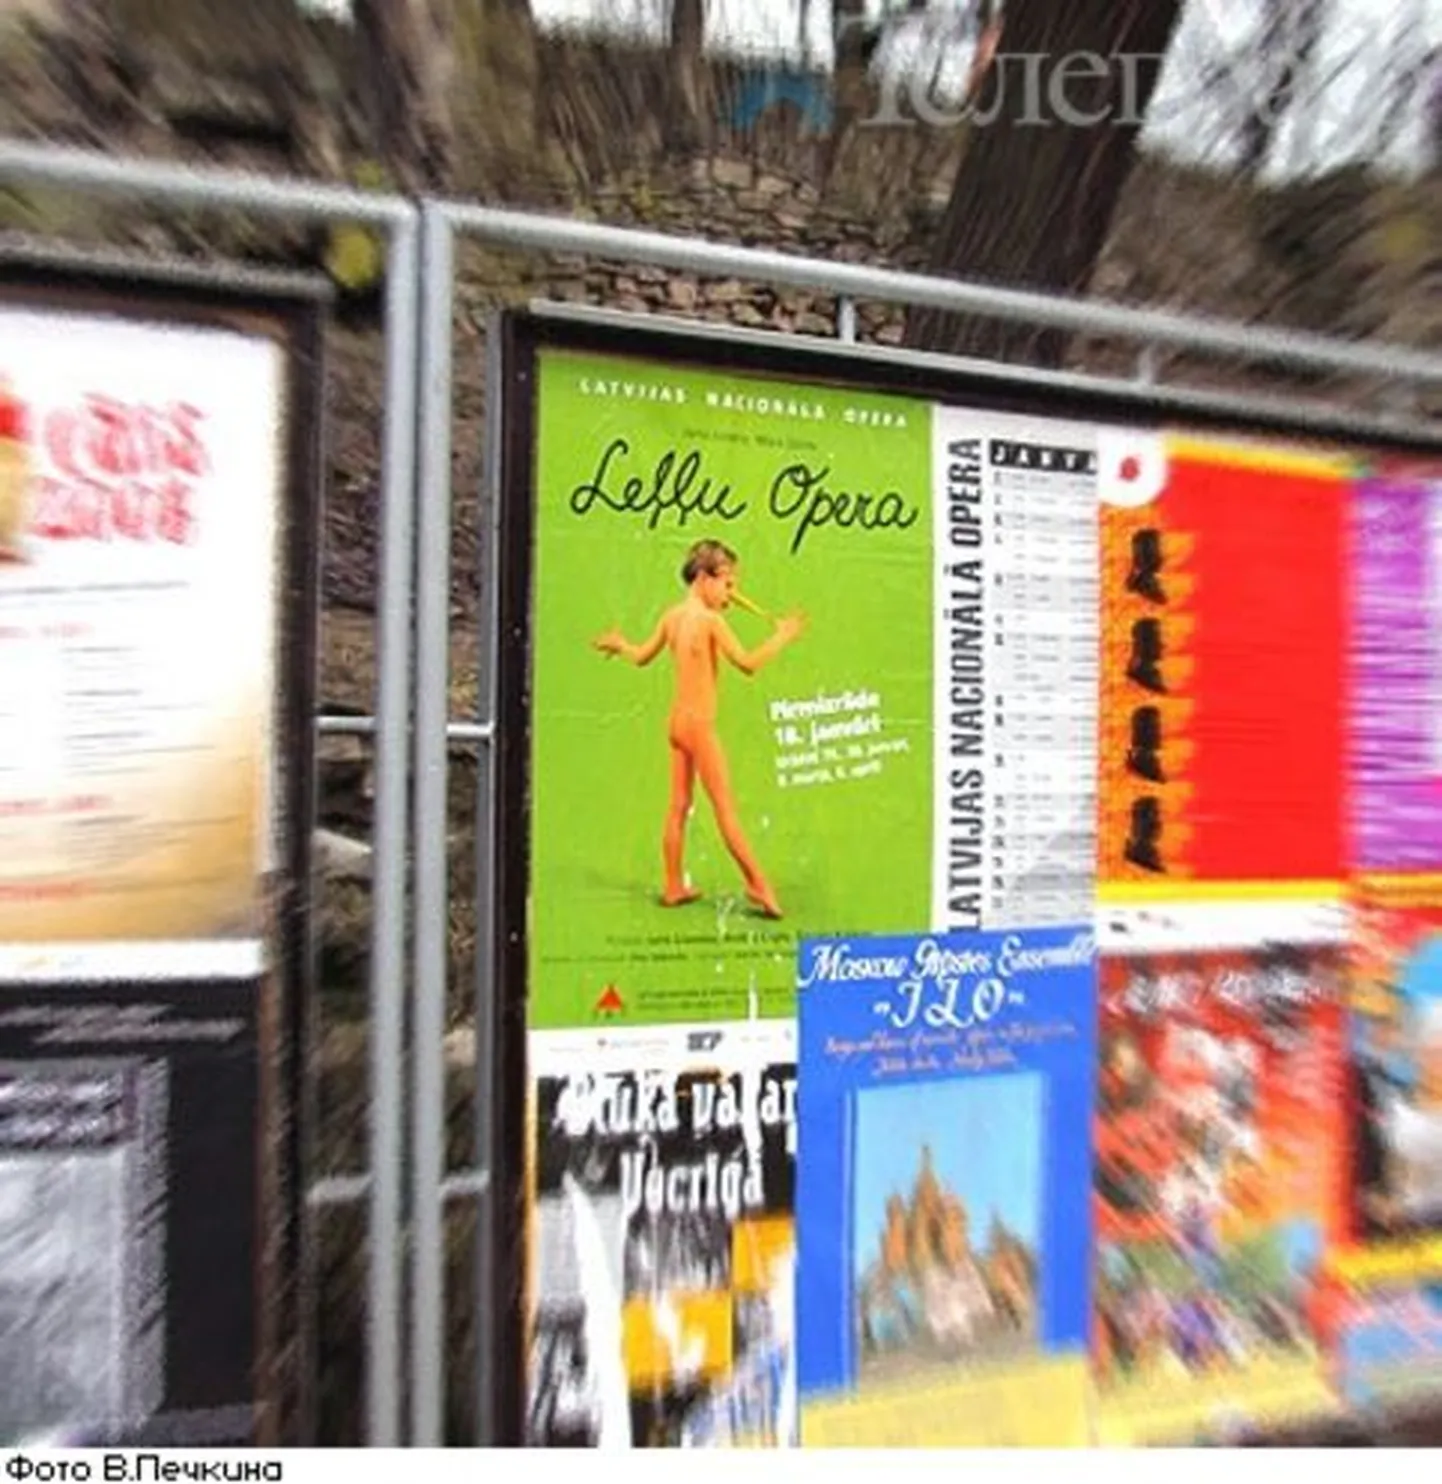 Läti rahvusooperi reklaam (ereroheline) sisaldab politsei väitel lapspornot.